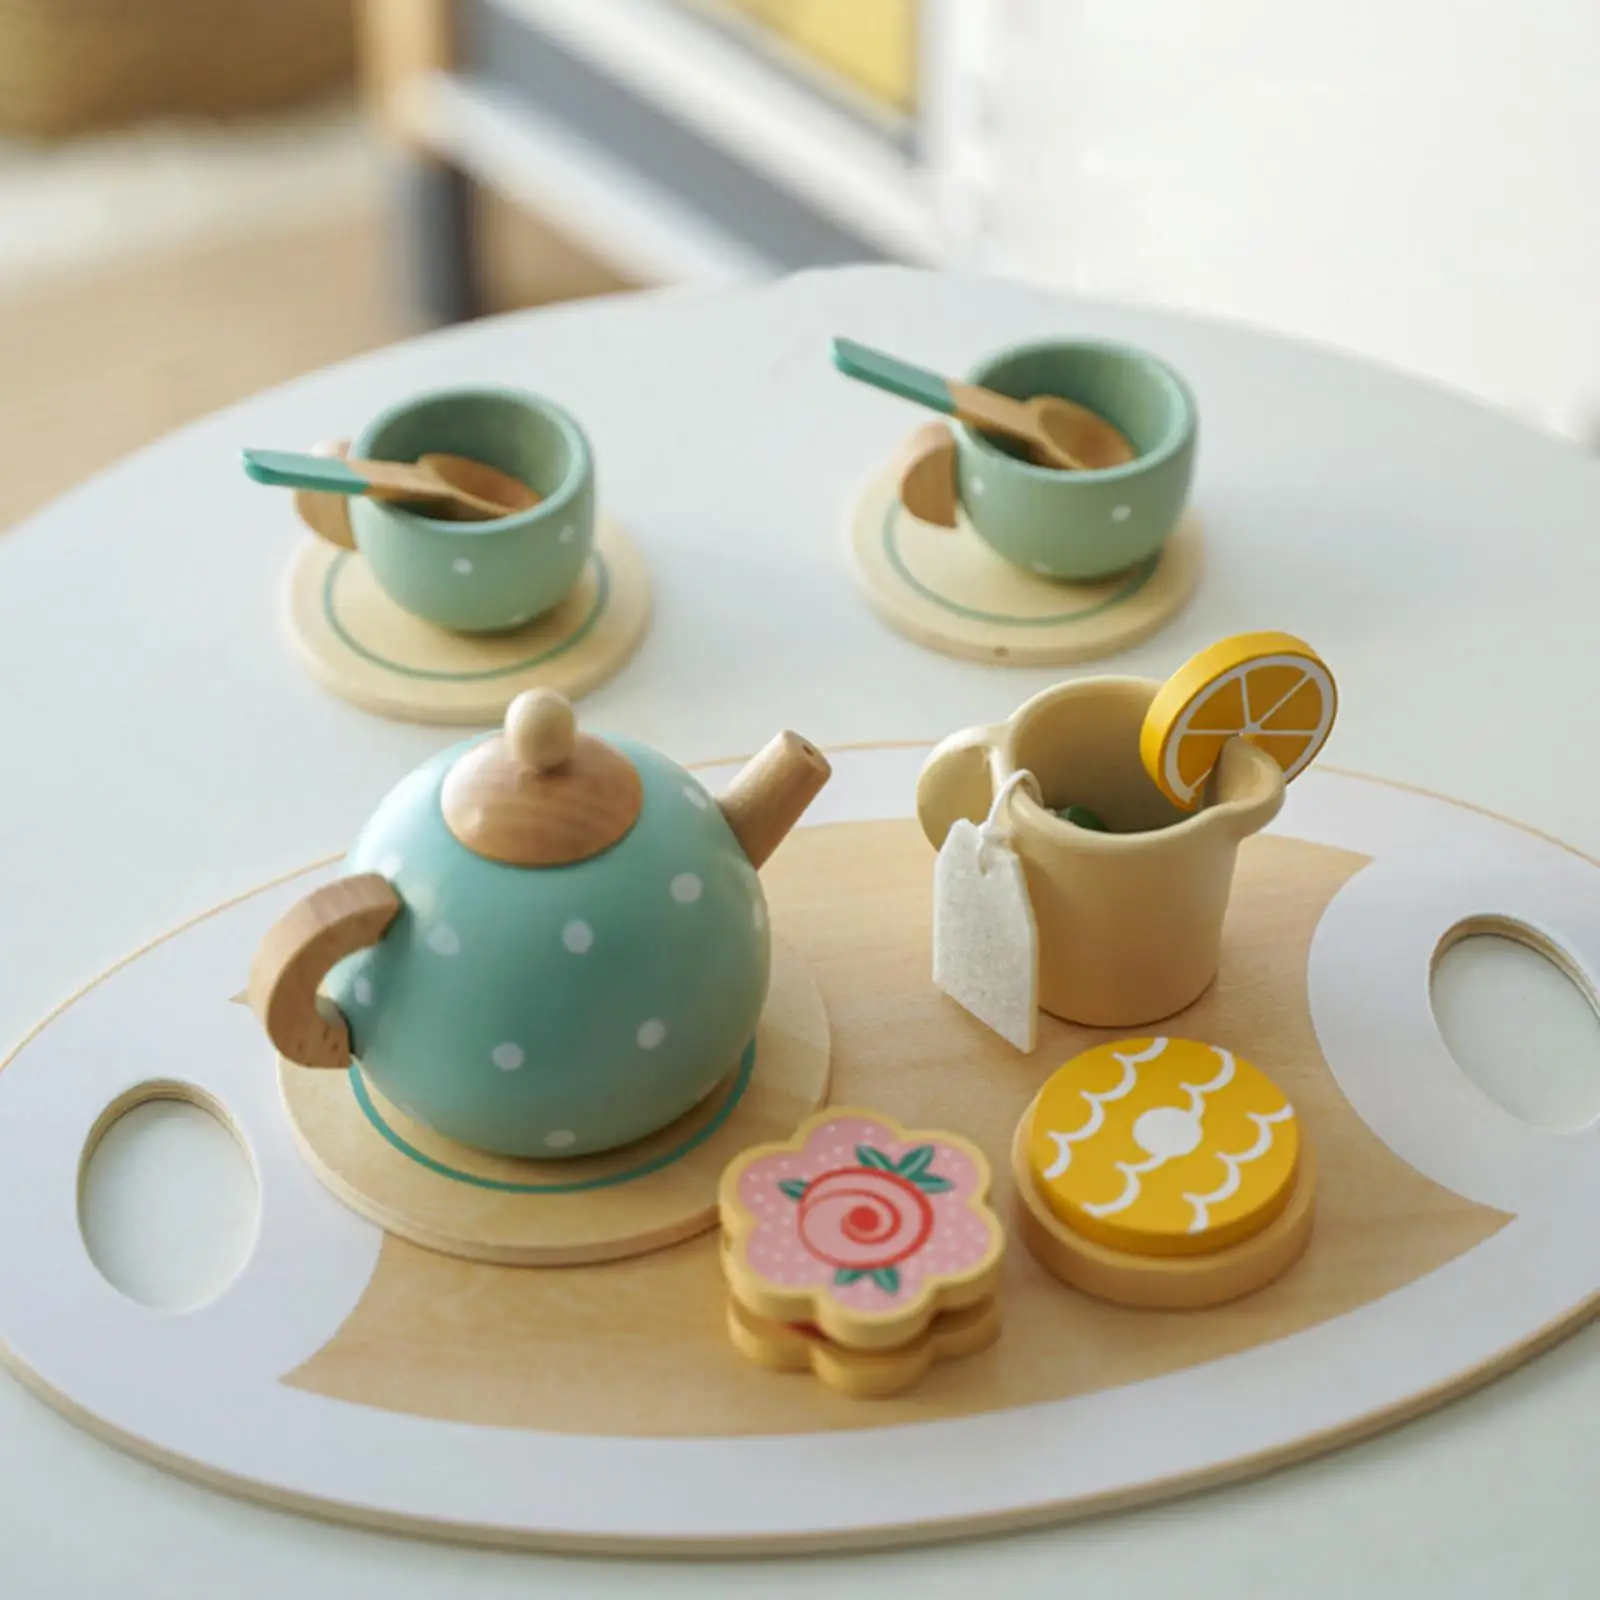 15 Pieces Kitchen Tableware Set Wooden Handiccraft Toy for Birthday Gift